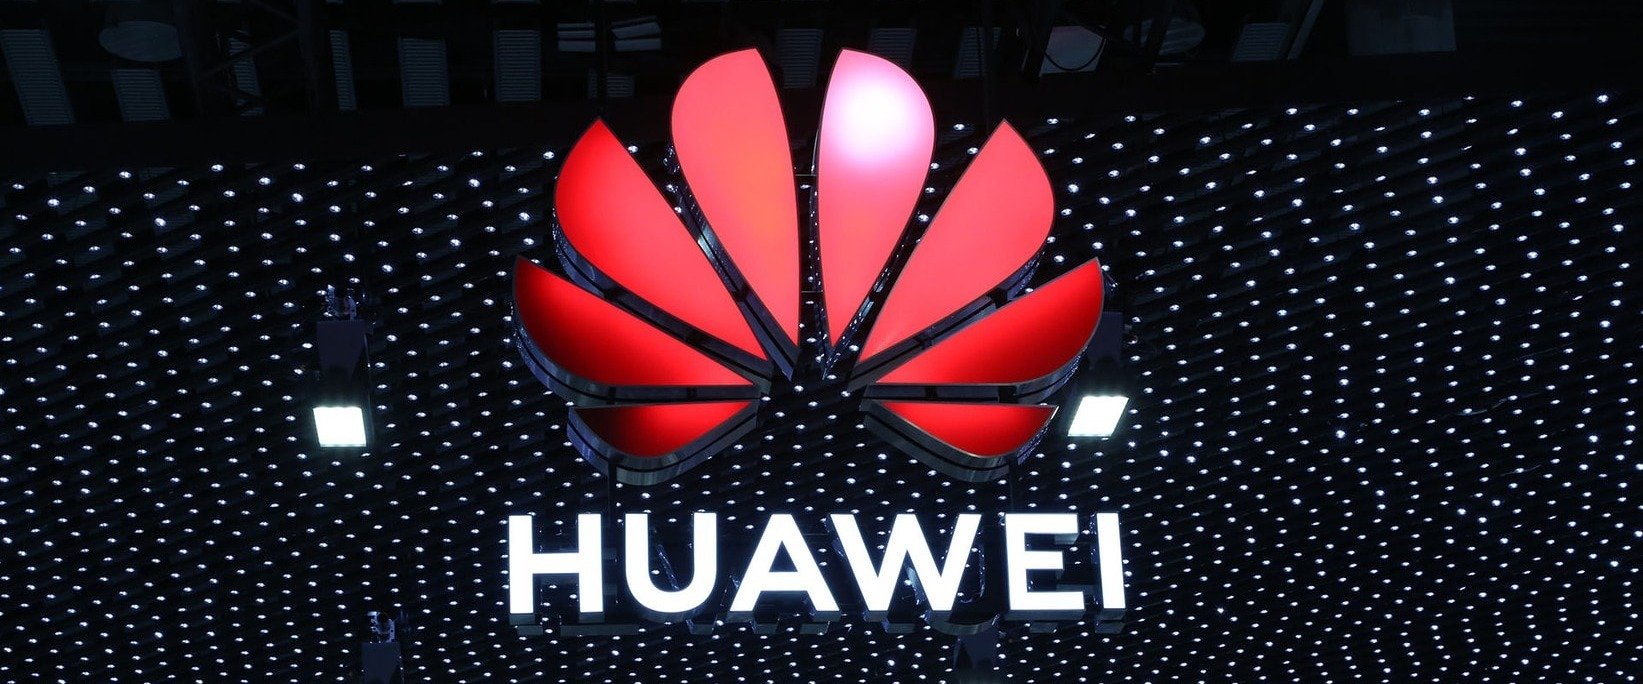 Huawei liderem rankingu unijnego urzędu ds. własności intelektualnej